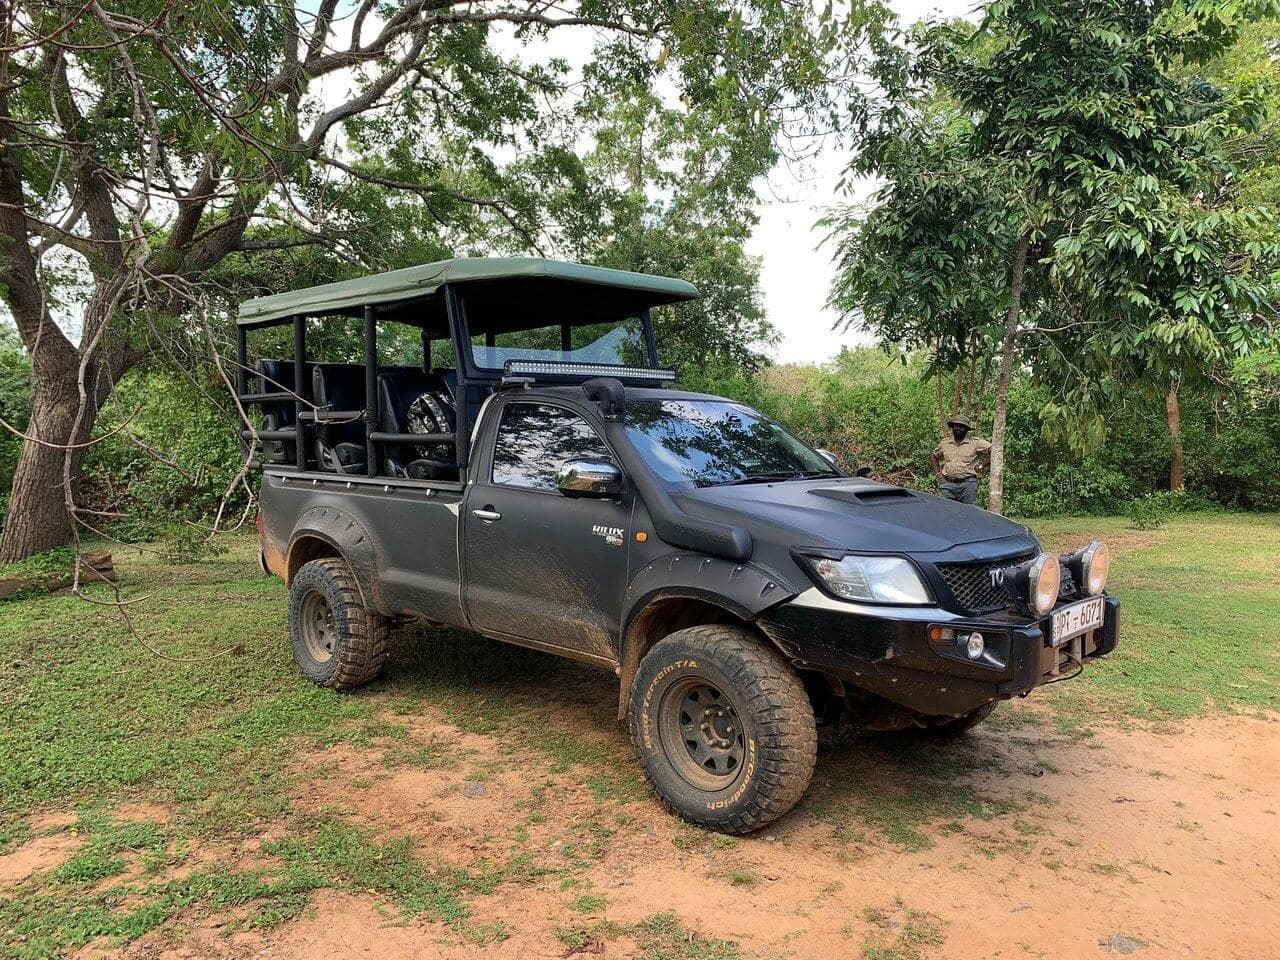 Ein Toyota-Fahrerhaus, das zu einem Safarifahrzeug umgebaut wurde, das bei einer Safari im Yala-Nationalpark in Sri Lanka verwendet wurde.